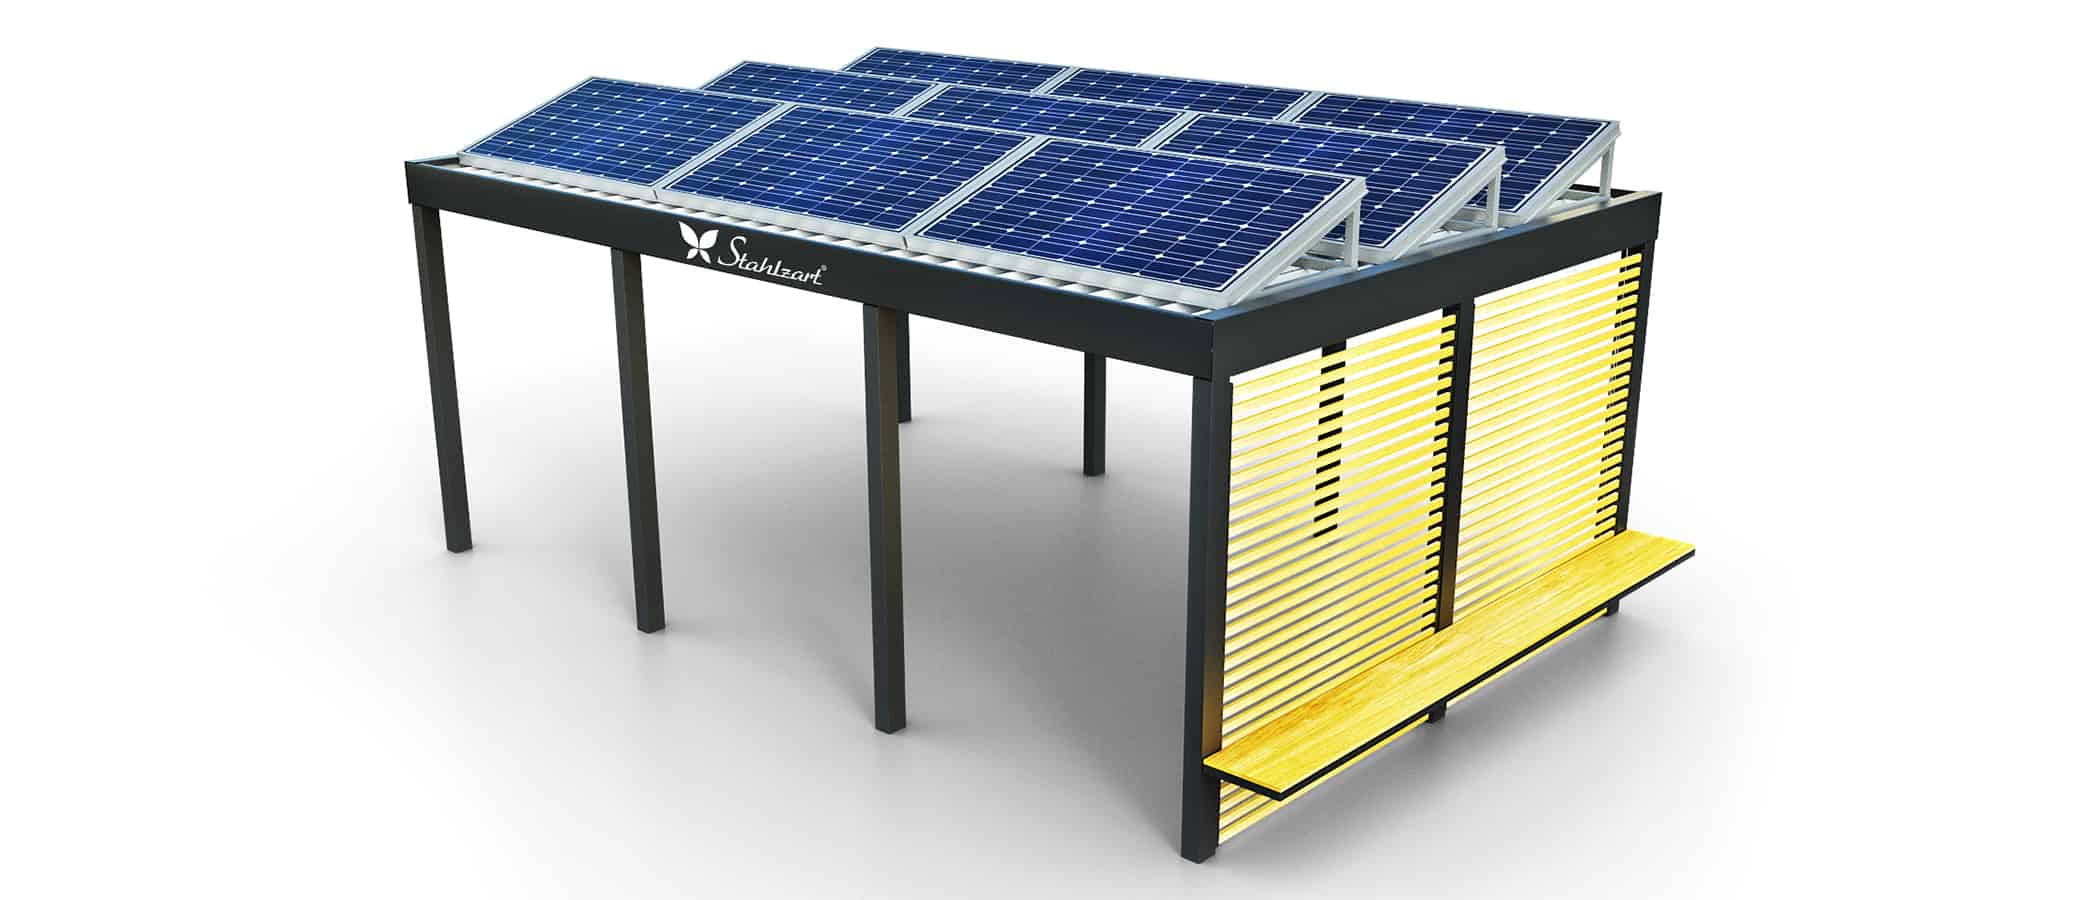 solar-carport-mit-flachdach-carports-pv-anlage-solaranlage-photovoltaik-garagen-garagendach-solarcarport-installation-solarmodulen-solarcarports-flaechen-dach-e-auto-holz-sitzbank-modern-stahlzart